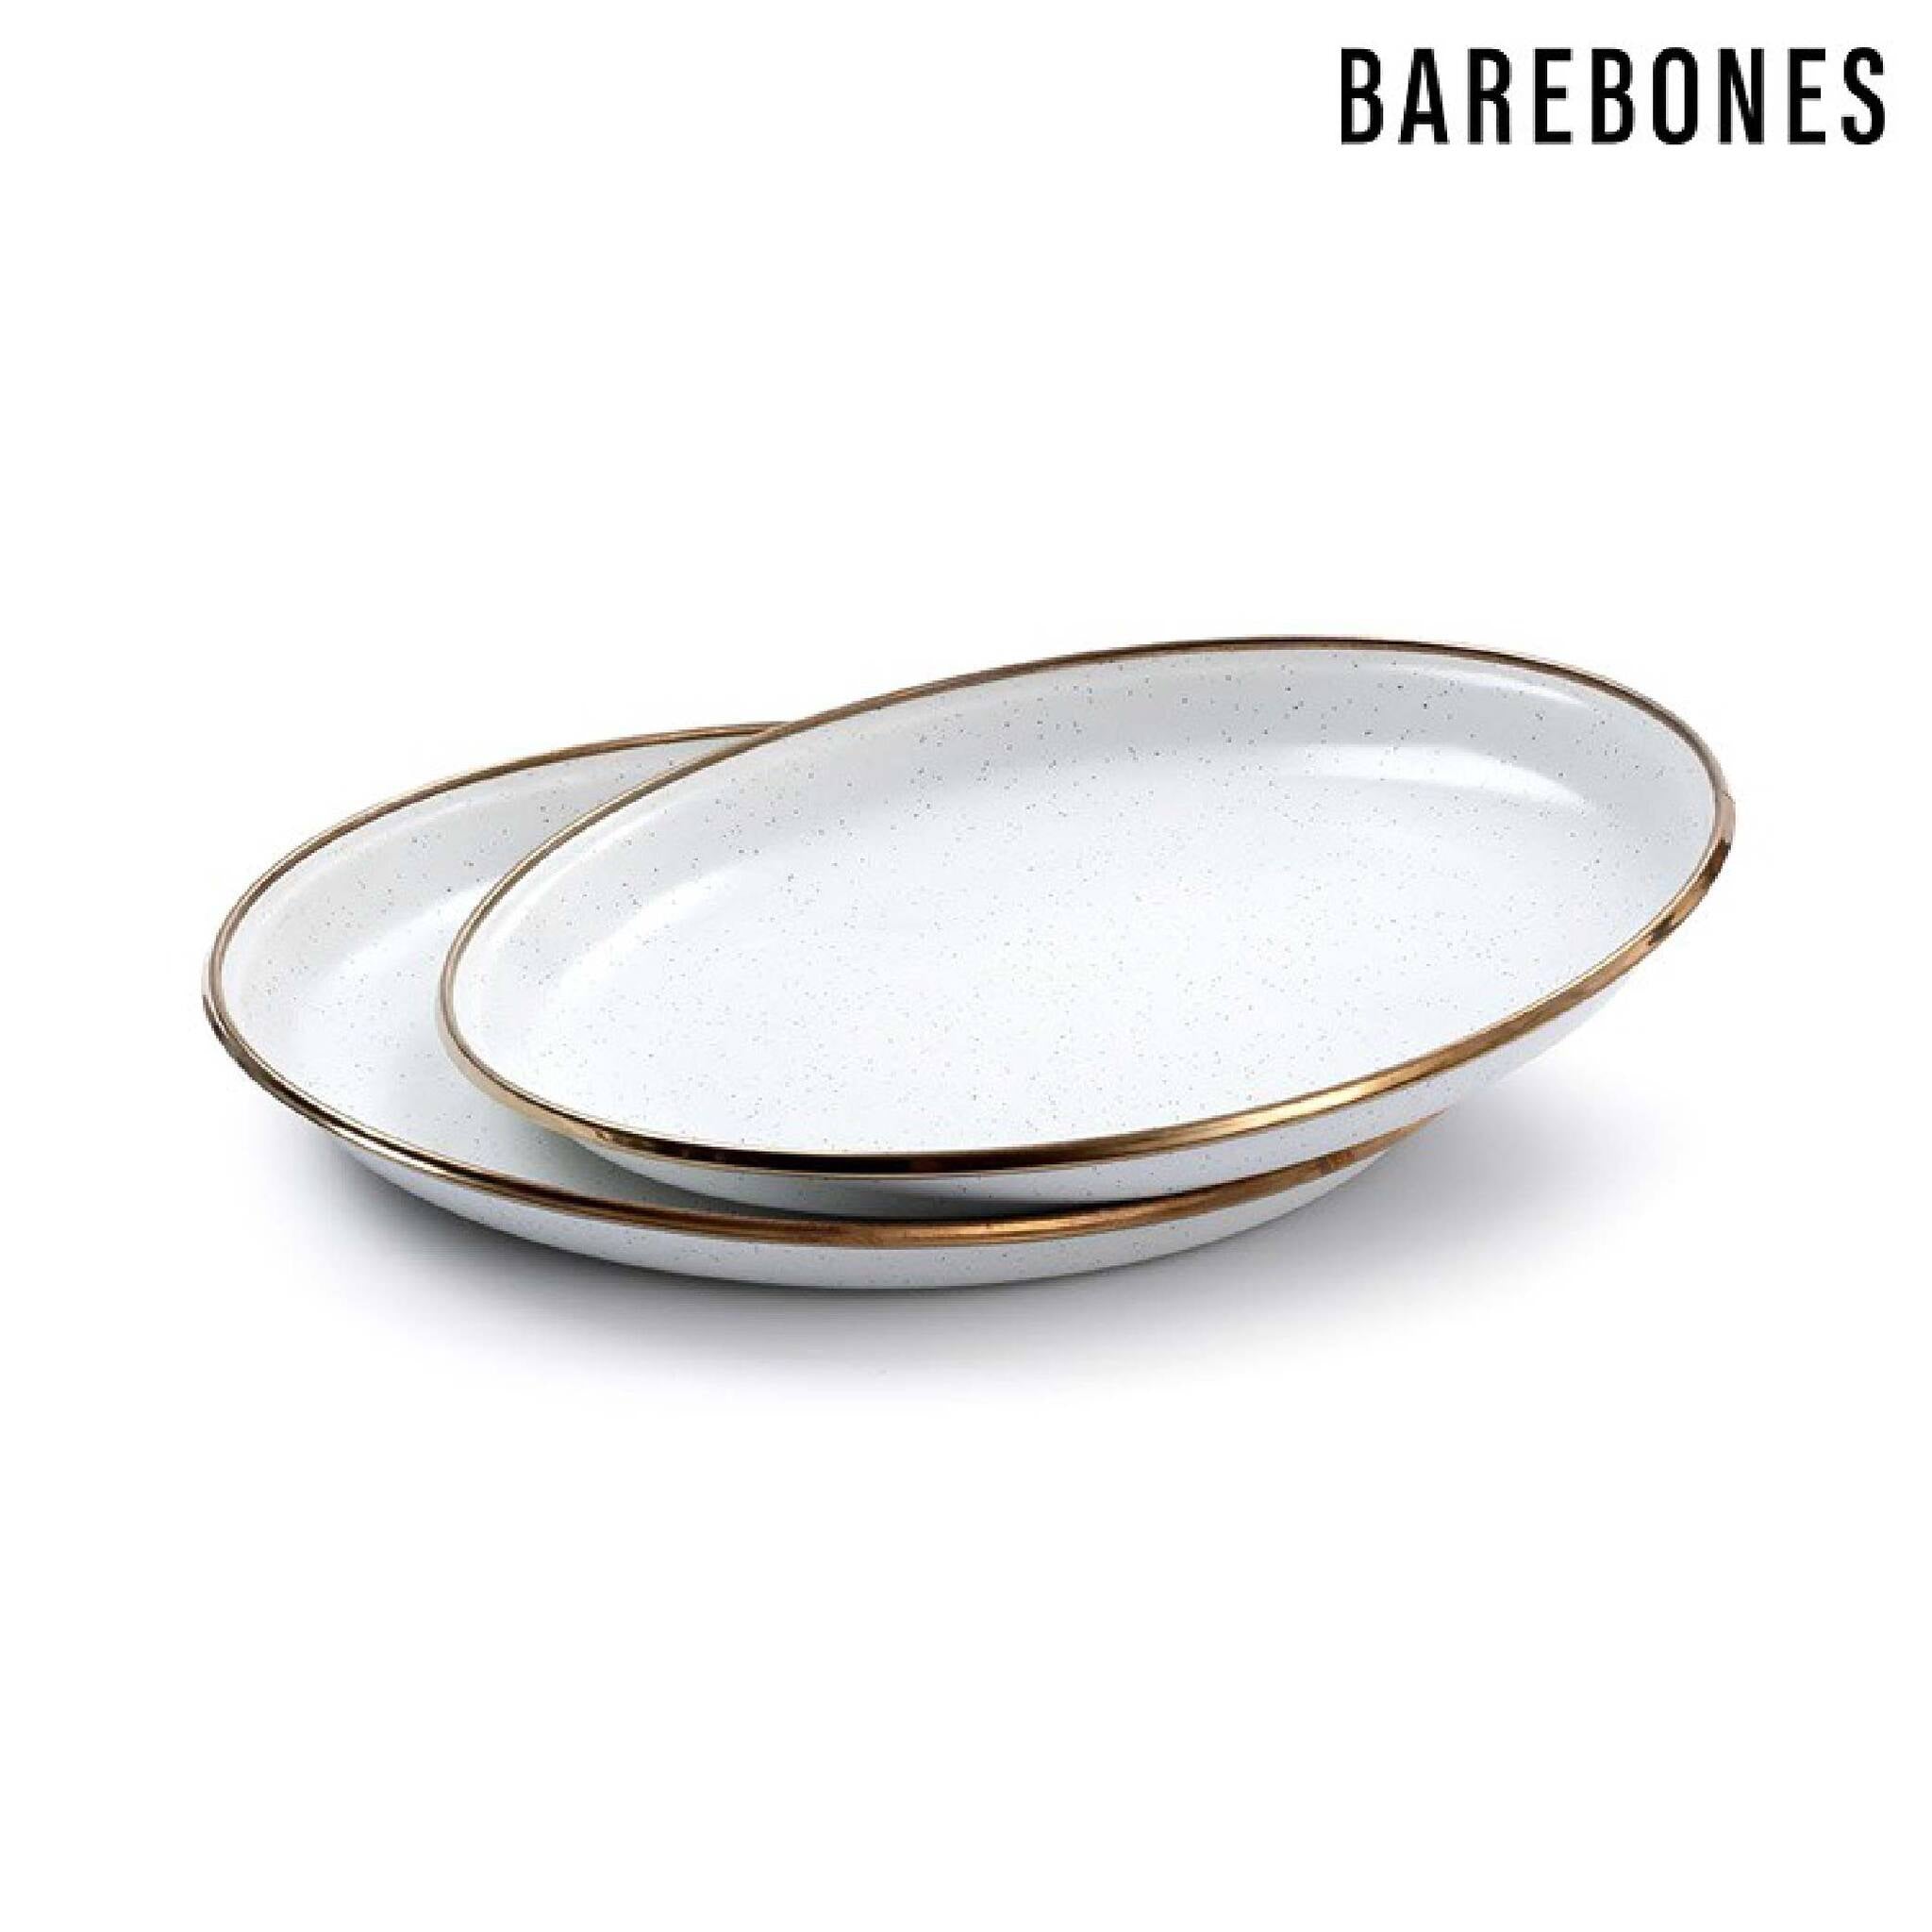 Barebones 琺瑯沙拉盤組 兩入一組 蛋殼白 CKW-392